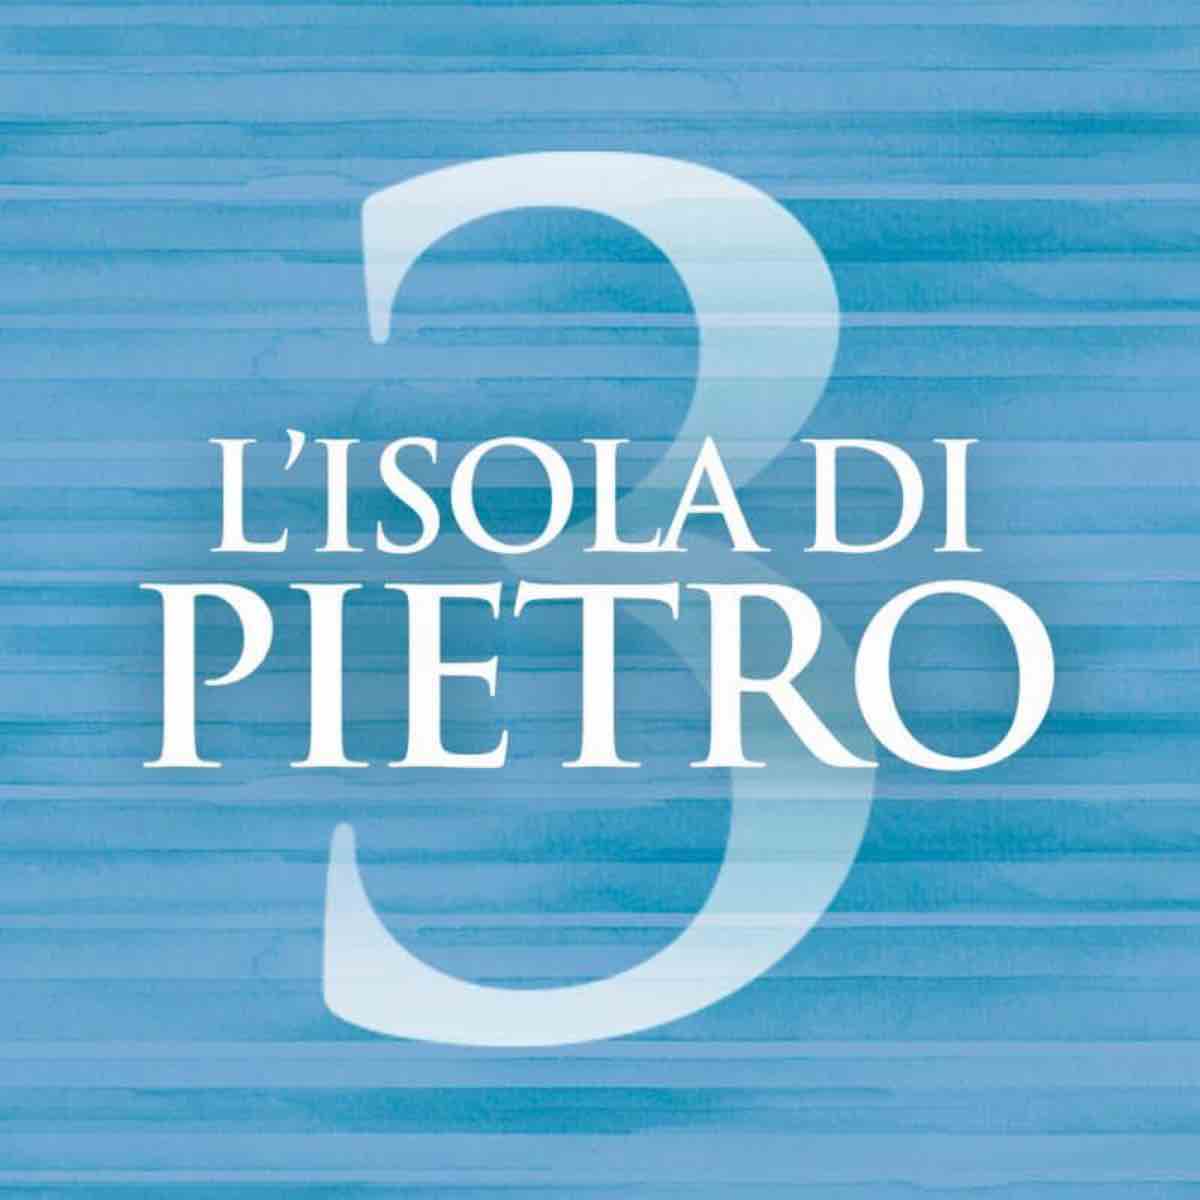 Canale 5 | L'isola di Pietro 3 | trama e cast miniserie | Gianni Morandi